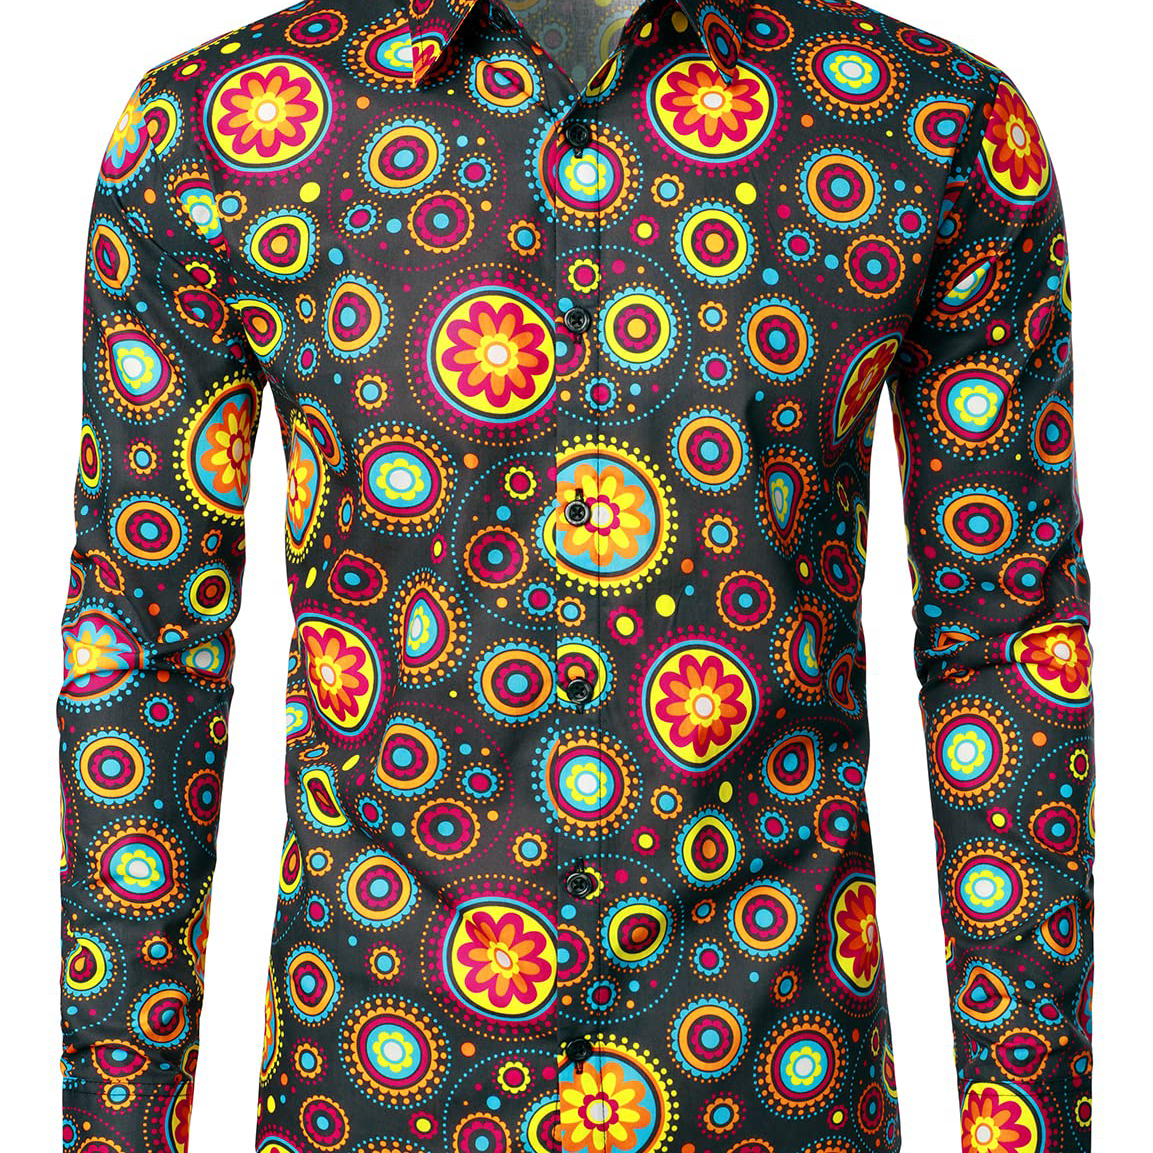 Camisa de vestir de manga larga con botones y flores de discoteca de algodón transpirable con diseño de cachemira floral para hombre